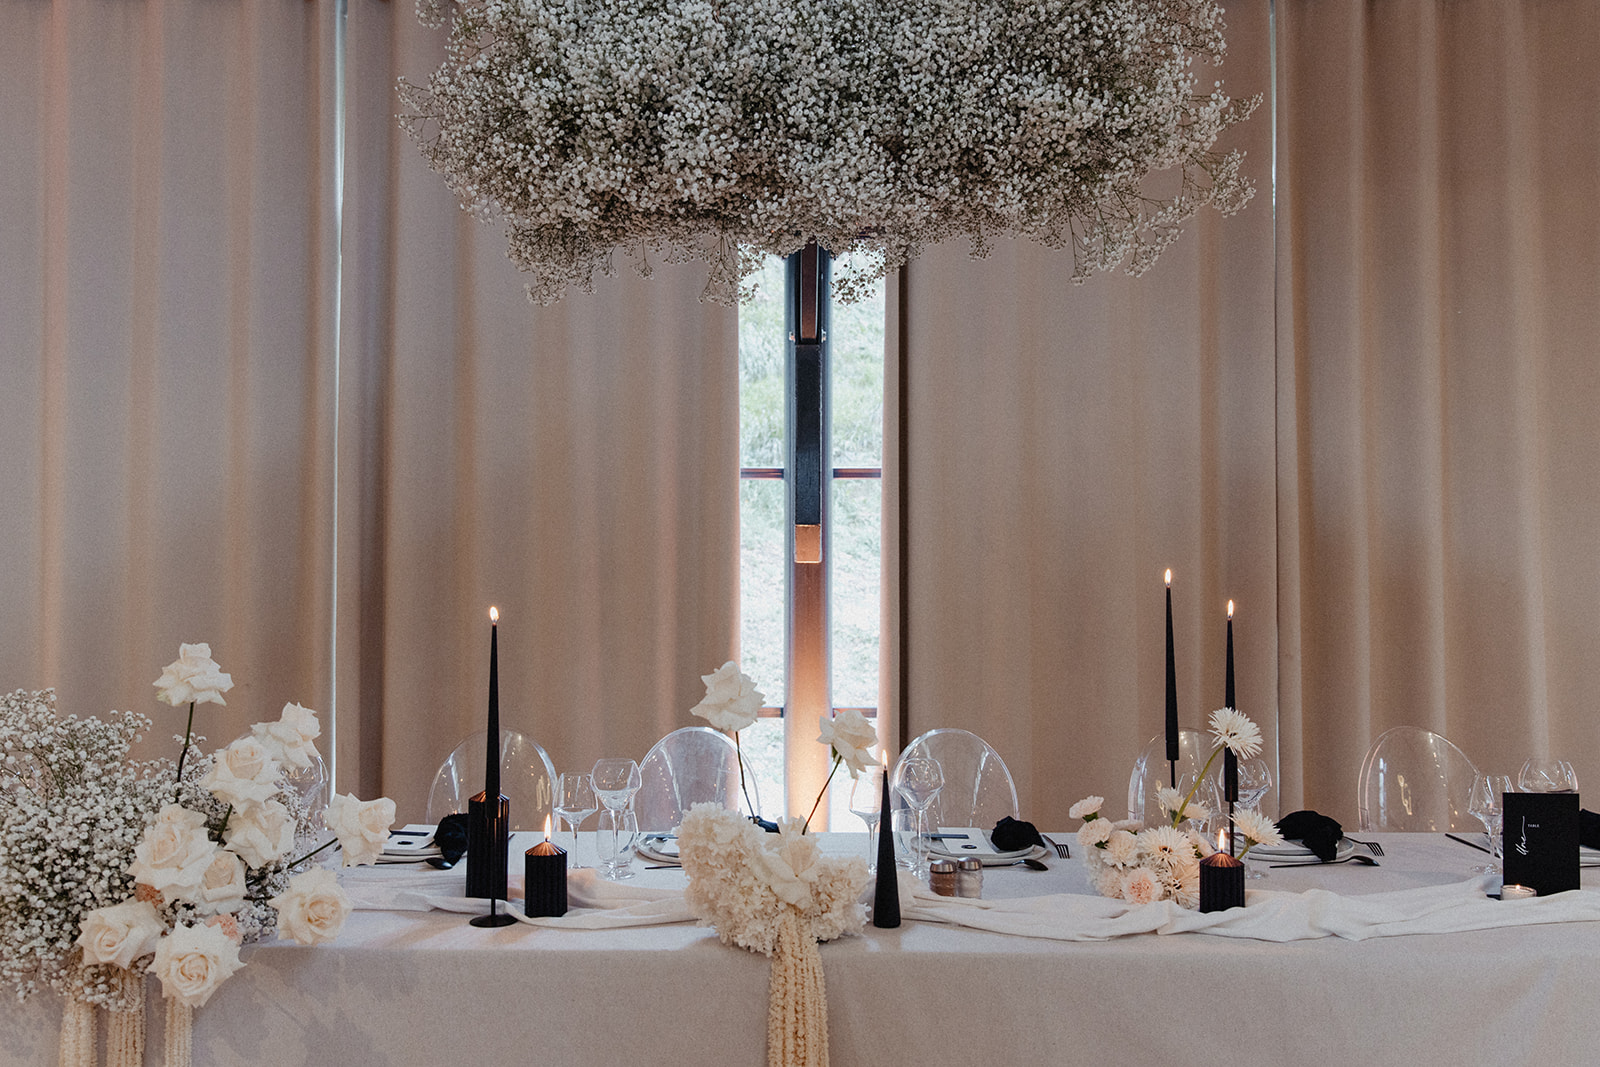 Mariage moderne en noir et blanc au mas de so empreinte éphémère wedding planner designer decoration de table